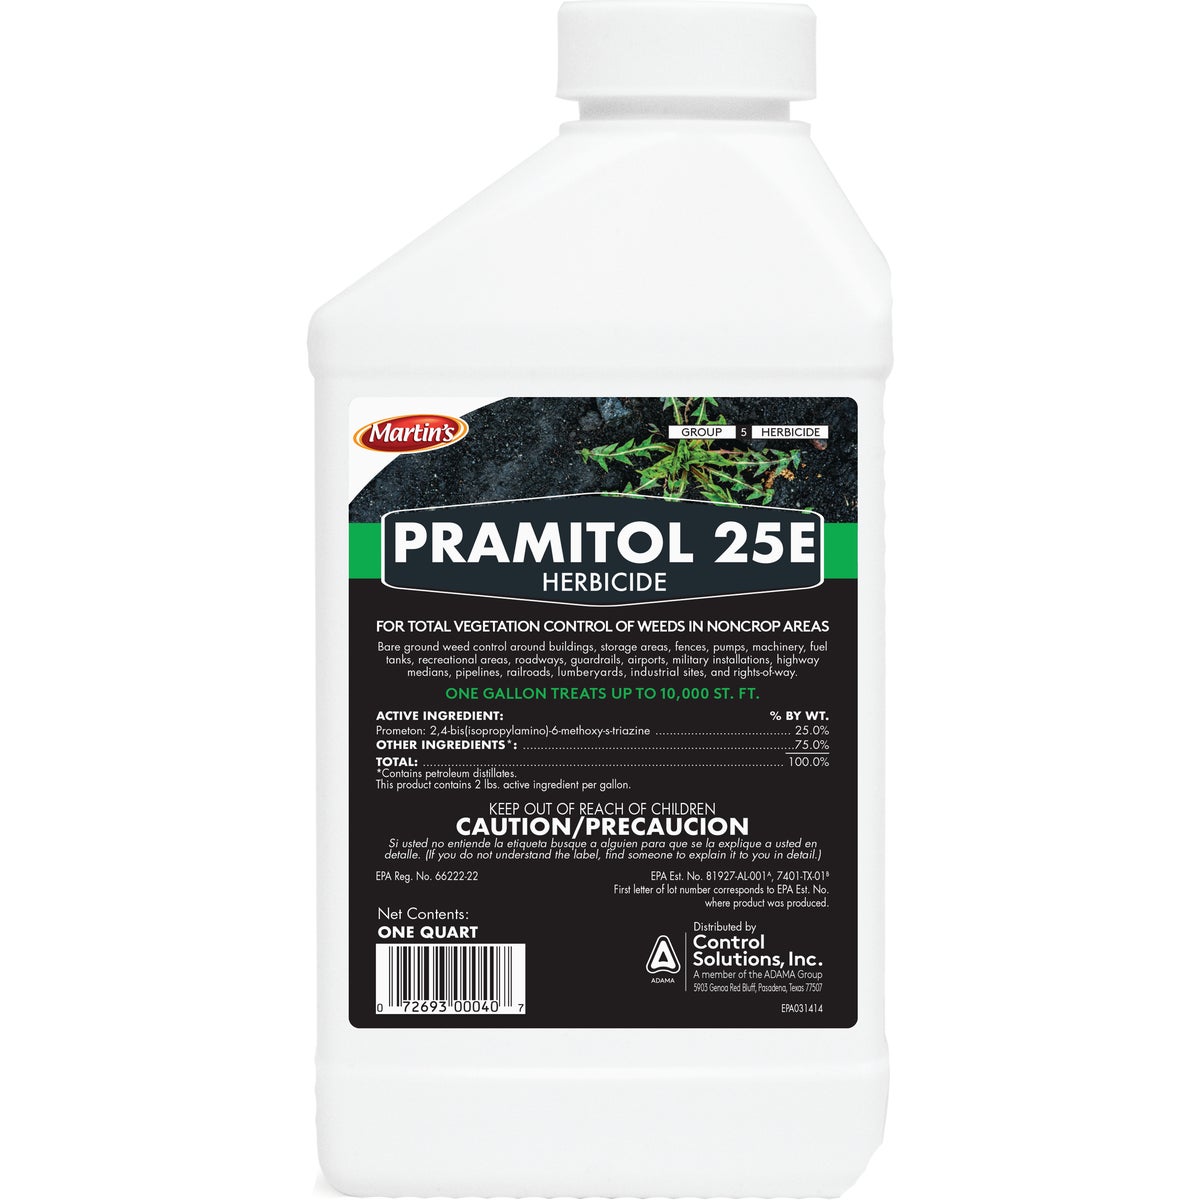 Item 703137, Pramitol 25E bare ground herbicide.